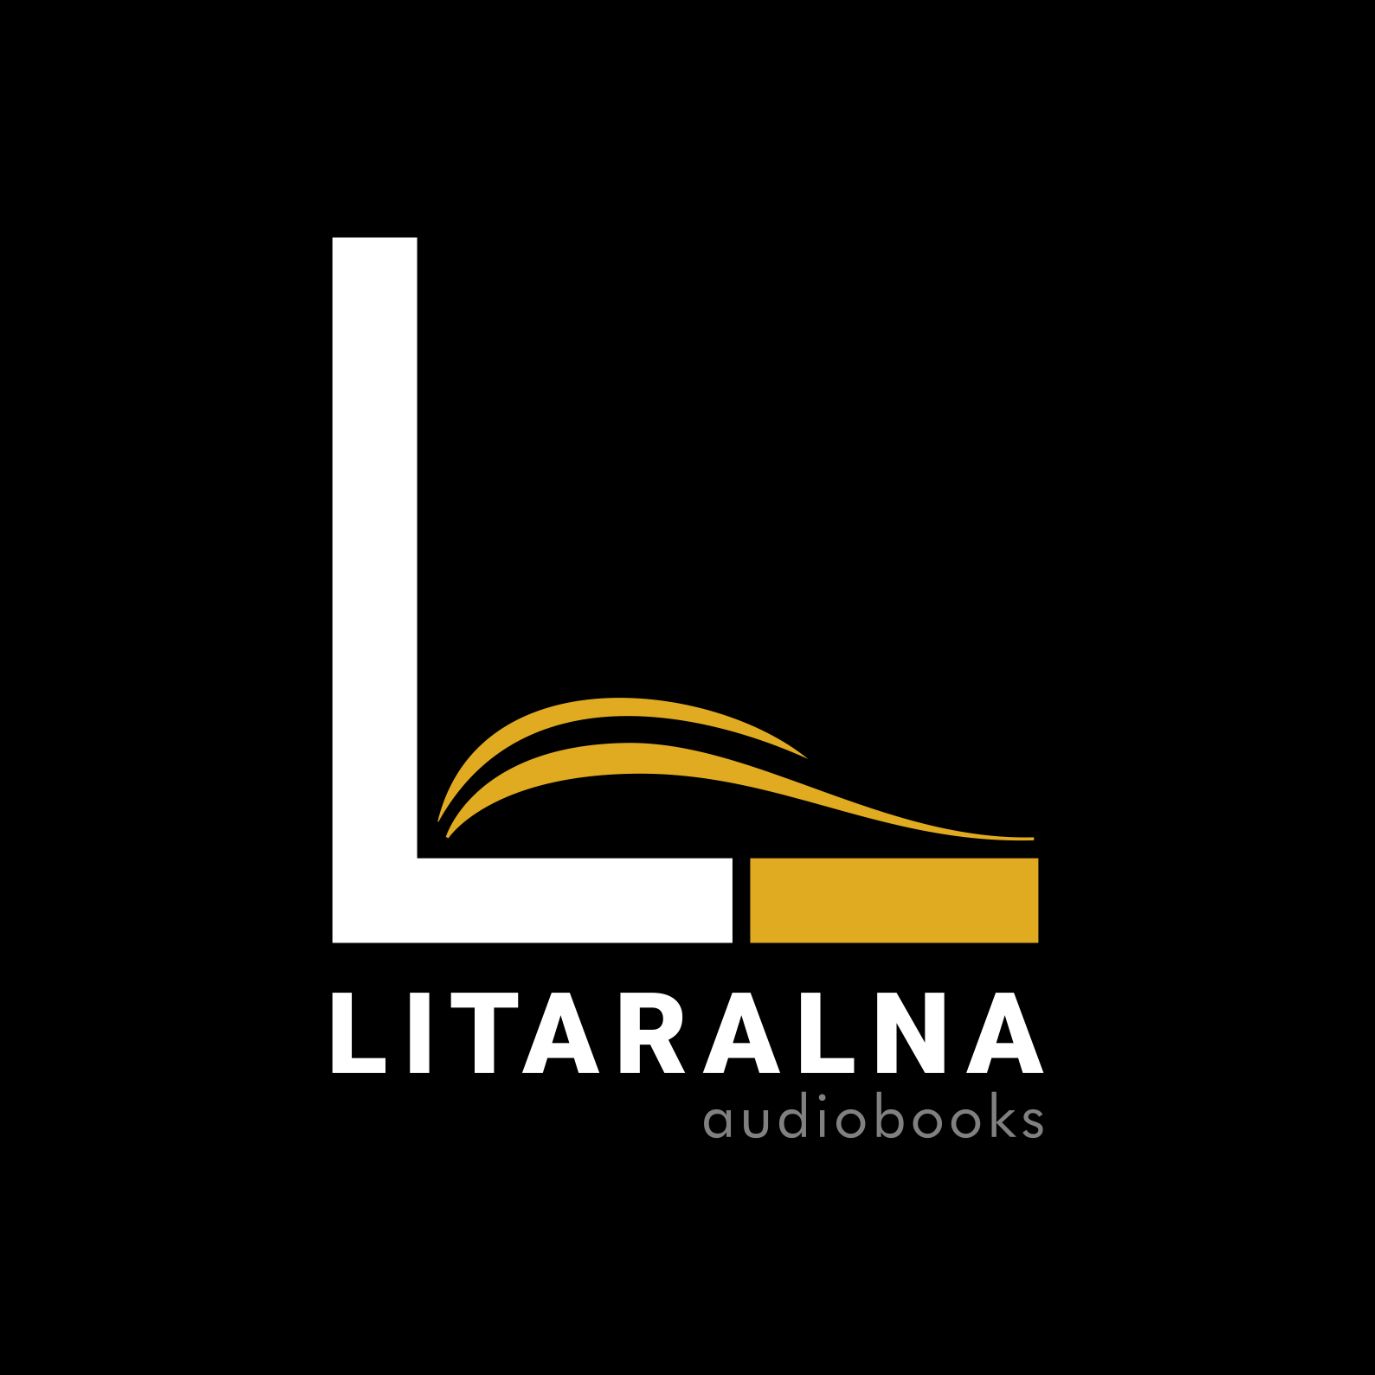 litaralna-logo-square.jpg